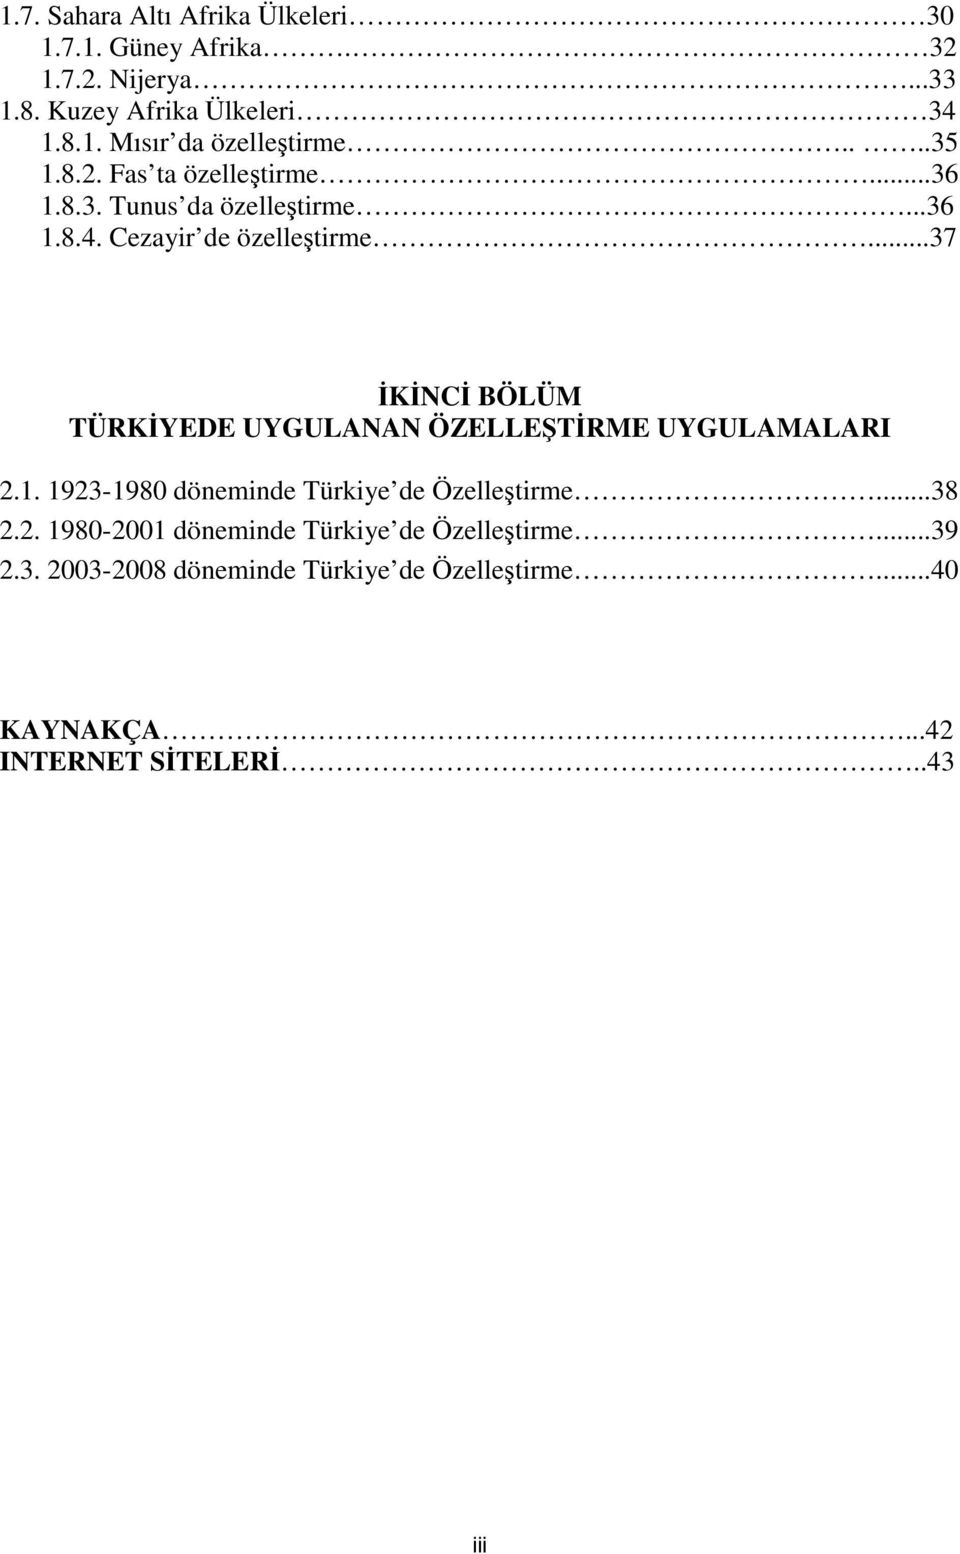 ..37 İKİNCİ BÖLÜM TÜRKİYEDE UYGULANAN ÖZELLEŞTİRME UYGULAMALARI 2.1. 1923-1980 döneminde Türkiye de Özelleştirme...38 2.2. 1980-2001 döneminde Türkiye de Özelleştirme.